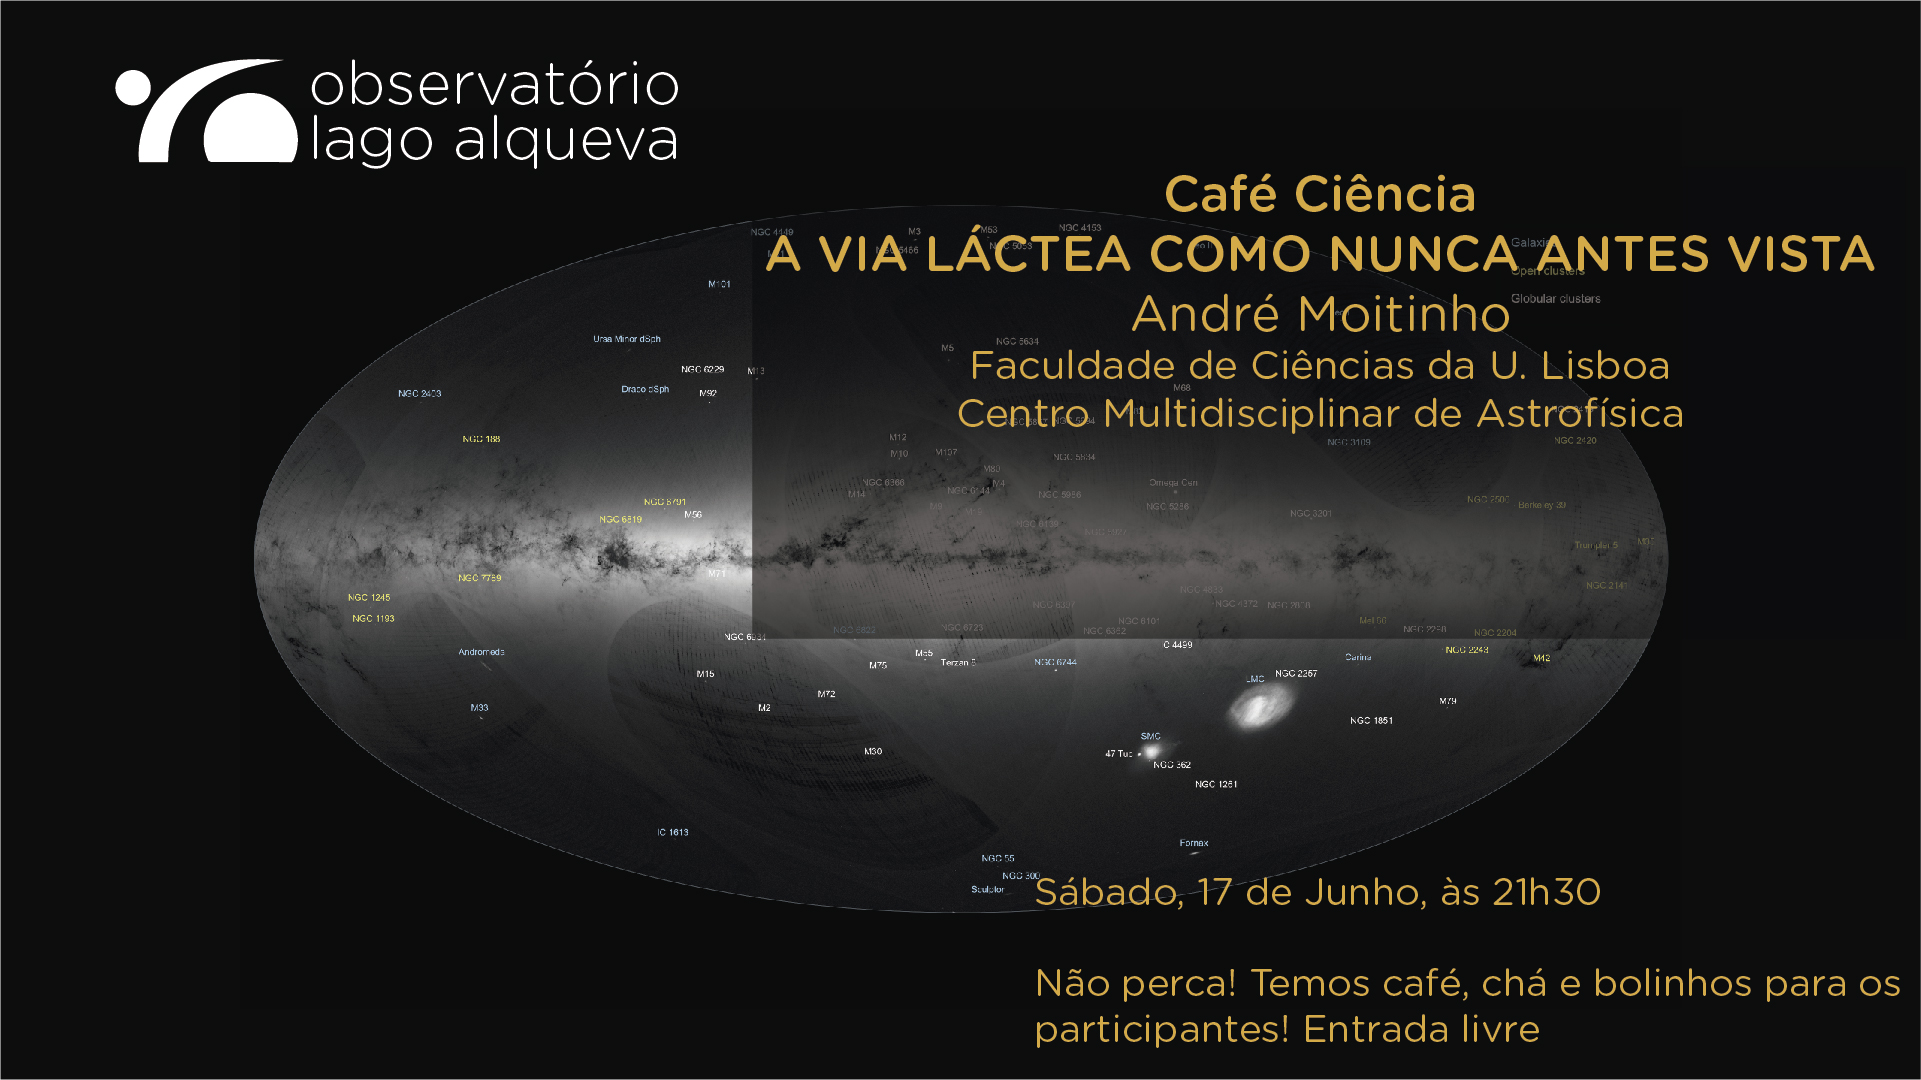 Café Ciência - A Via Láctea como nunca antes vista